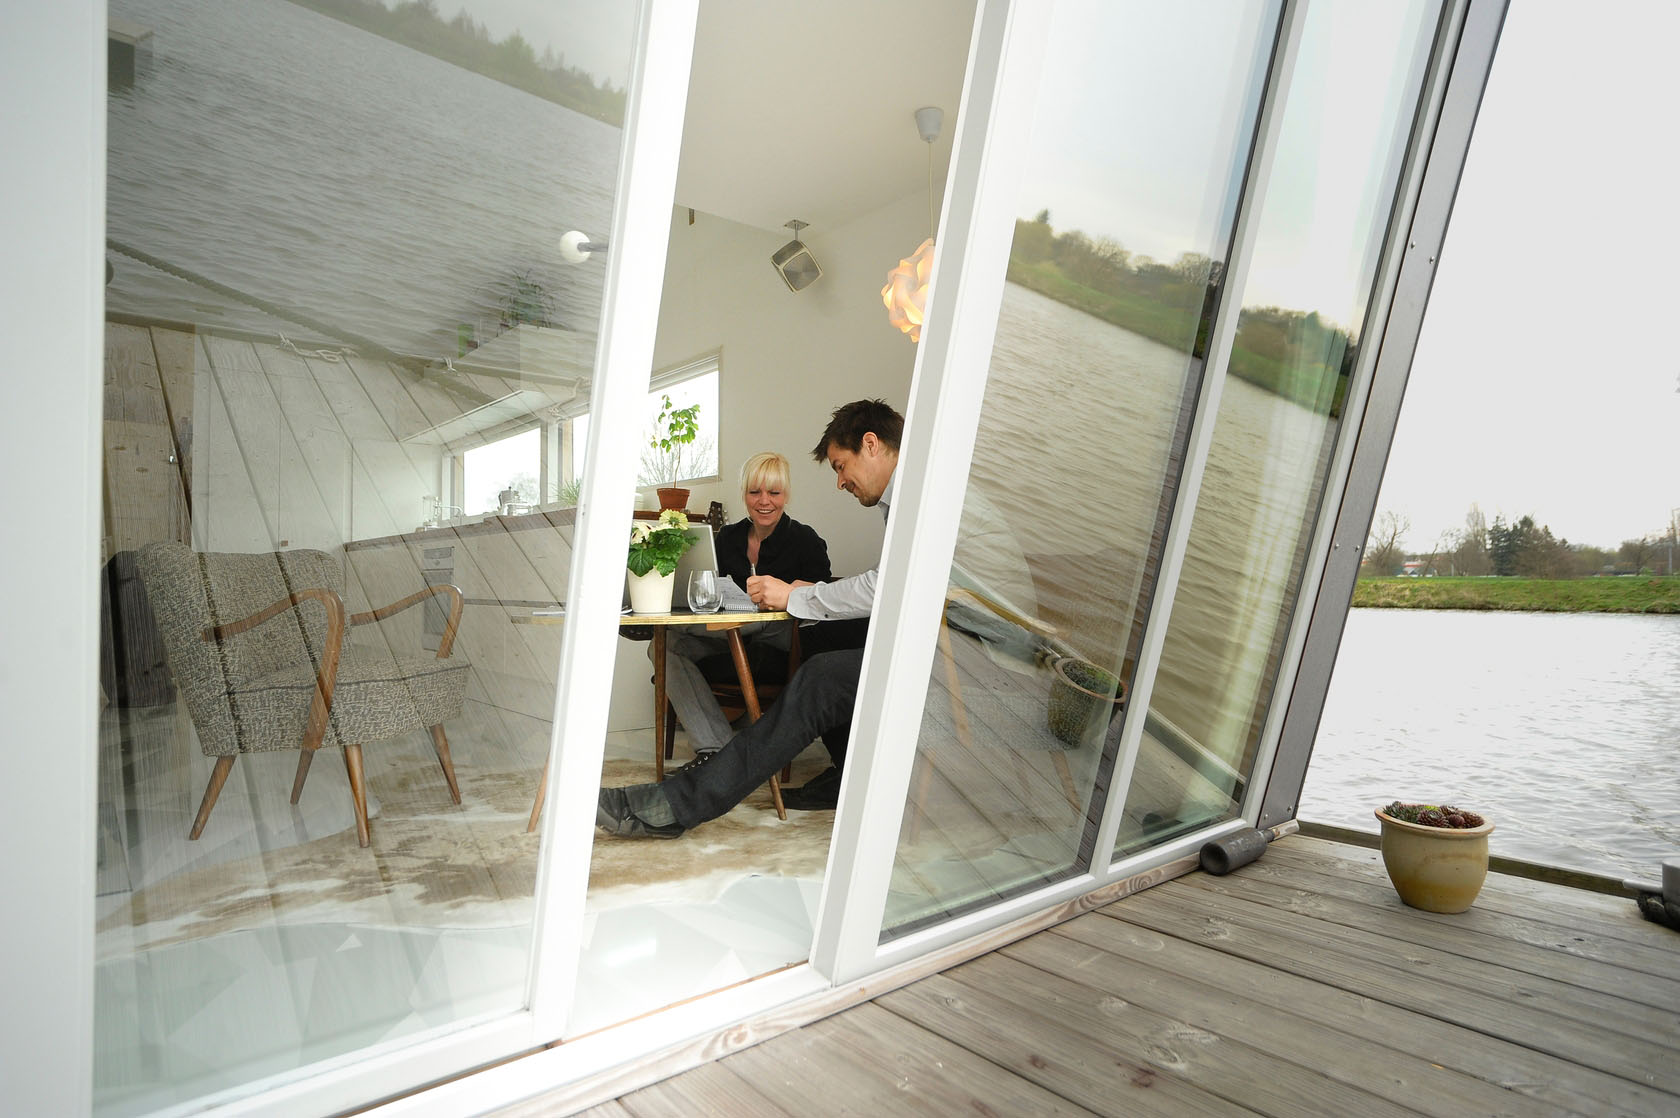 Дизайн интерьера дома в Германии на плавучей платформе от Sascha Akkermann и Flo Florian